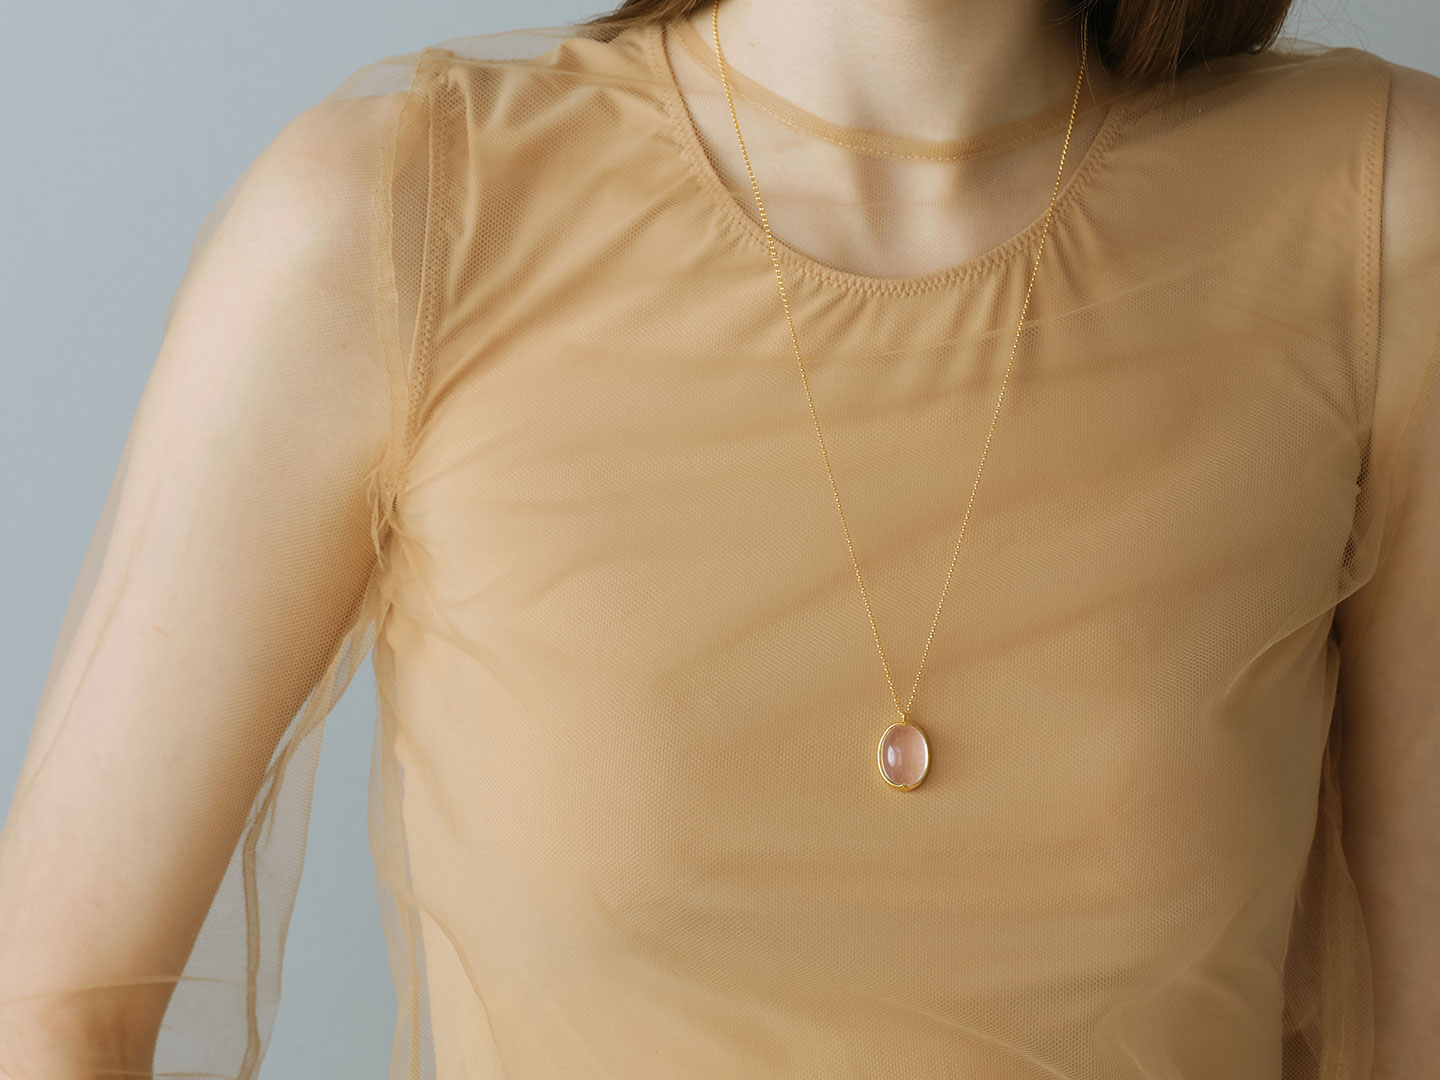 Star rose quartz long necklace /スターローズクォーツ. | Hariqua ...